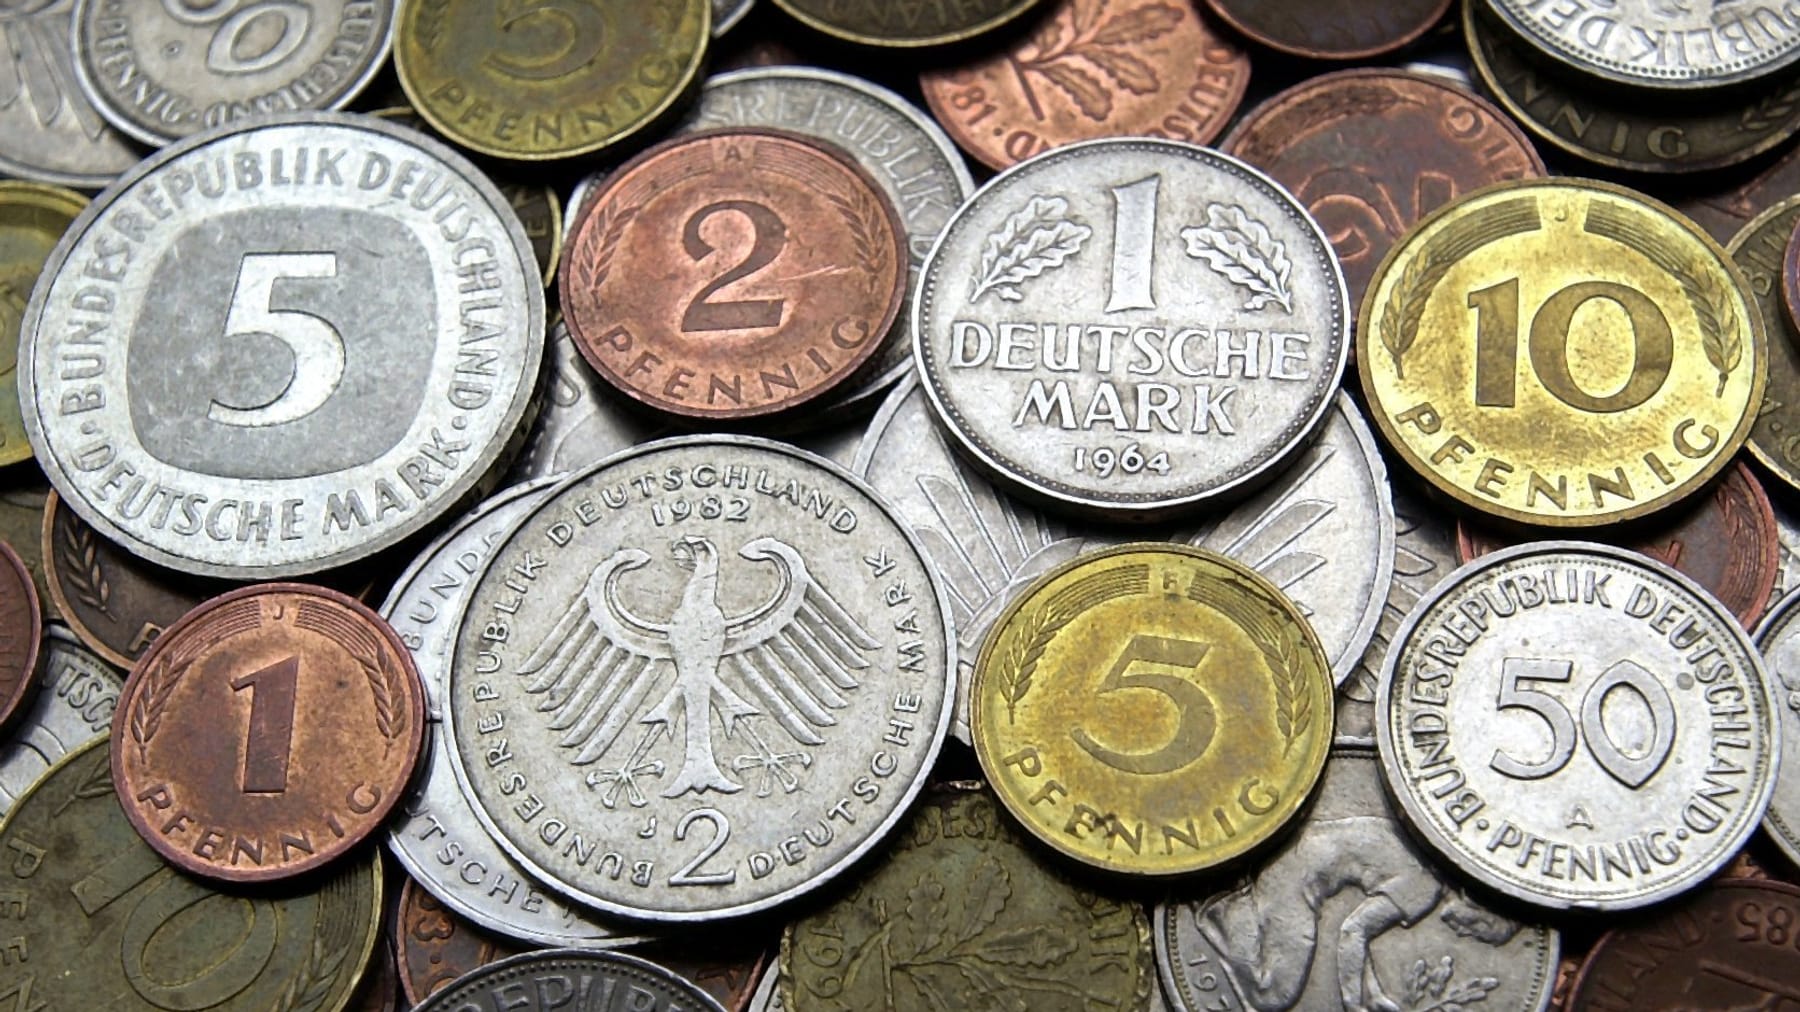 Deutsche mark. Валюта Германии марка. Денежная единица — марка (Deutsche Mark). Немецкие марки деньги. Национальная валюта Германии.